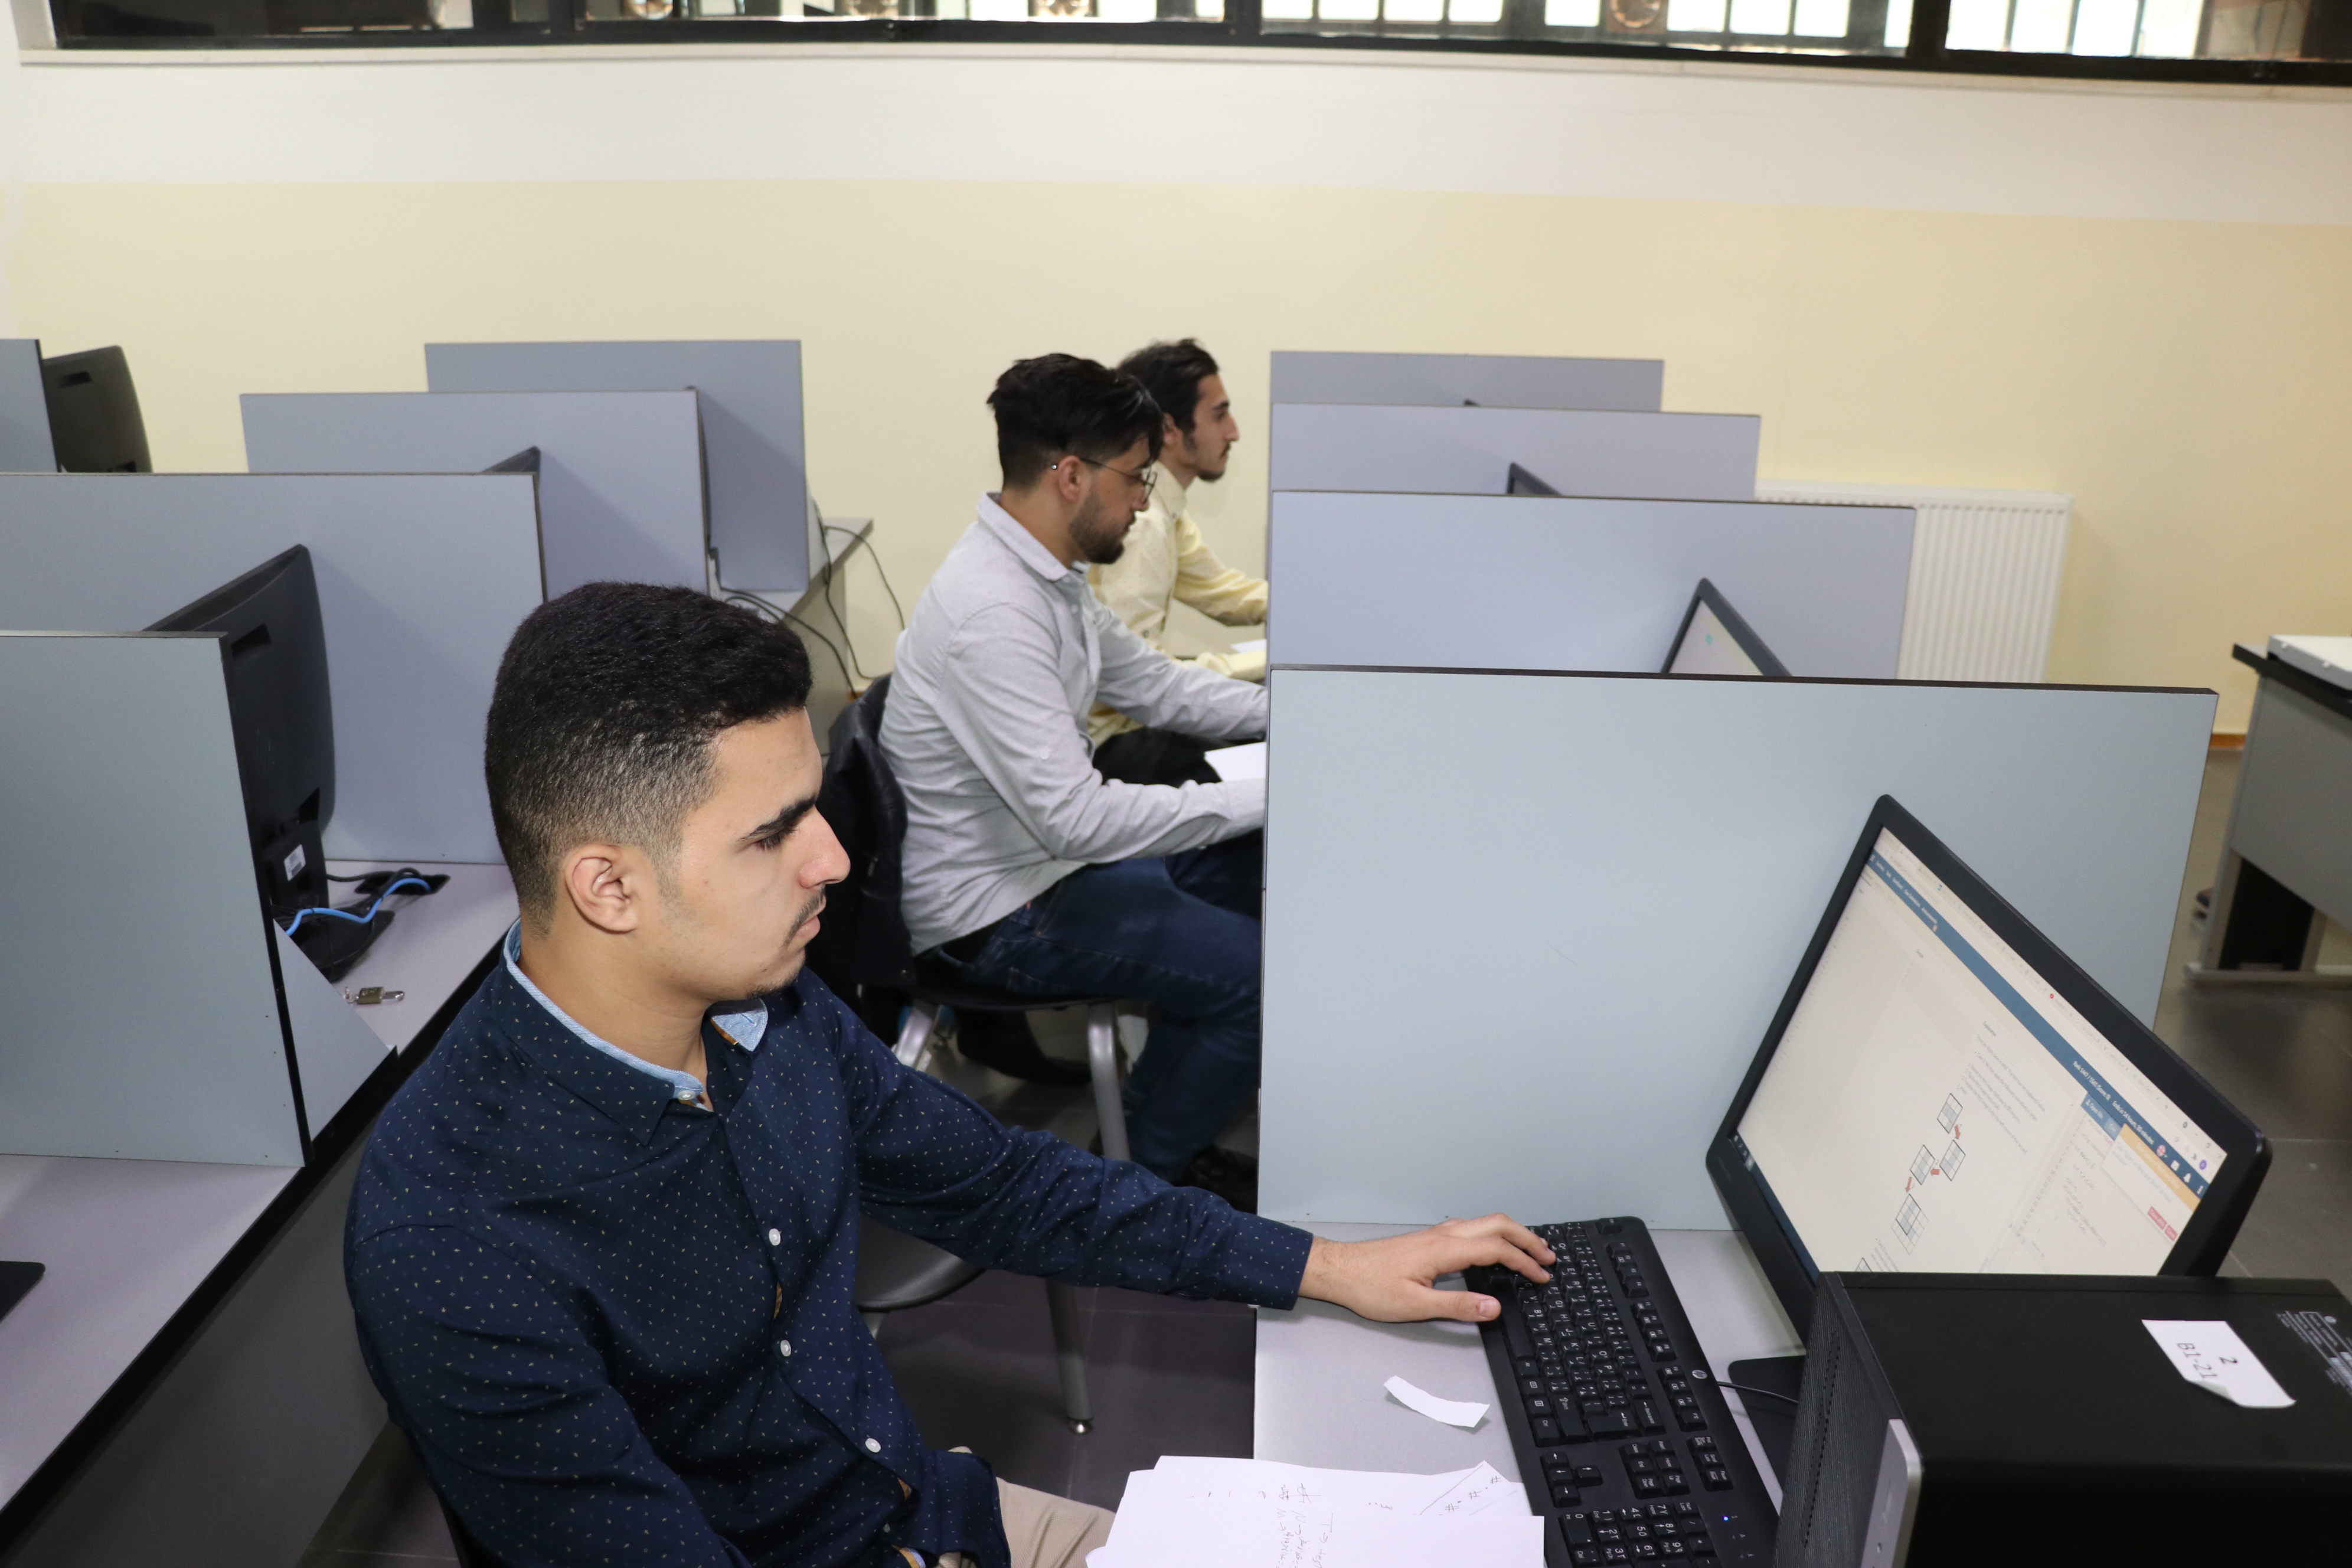 كلية العلوم الحاسوبية والمعلوماتية في جامعة عمان العربية تشارك بمسابقة IEEEXtreme  العالمية 2